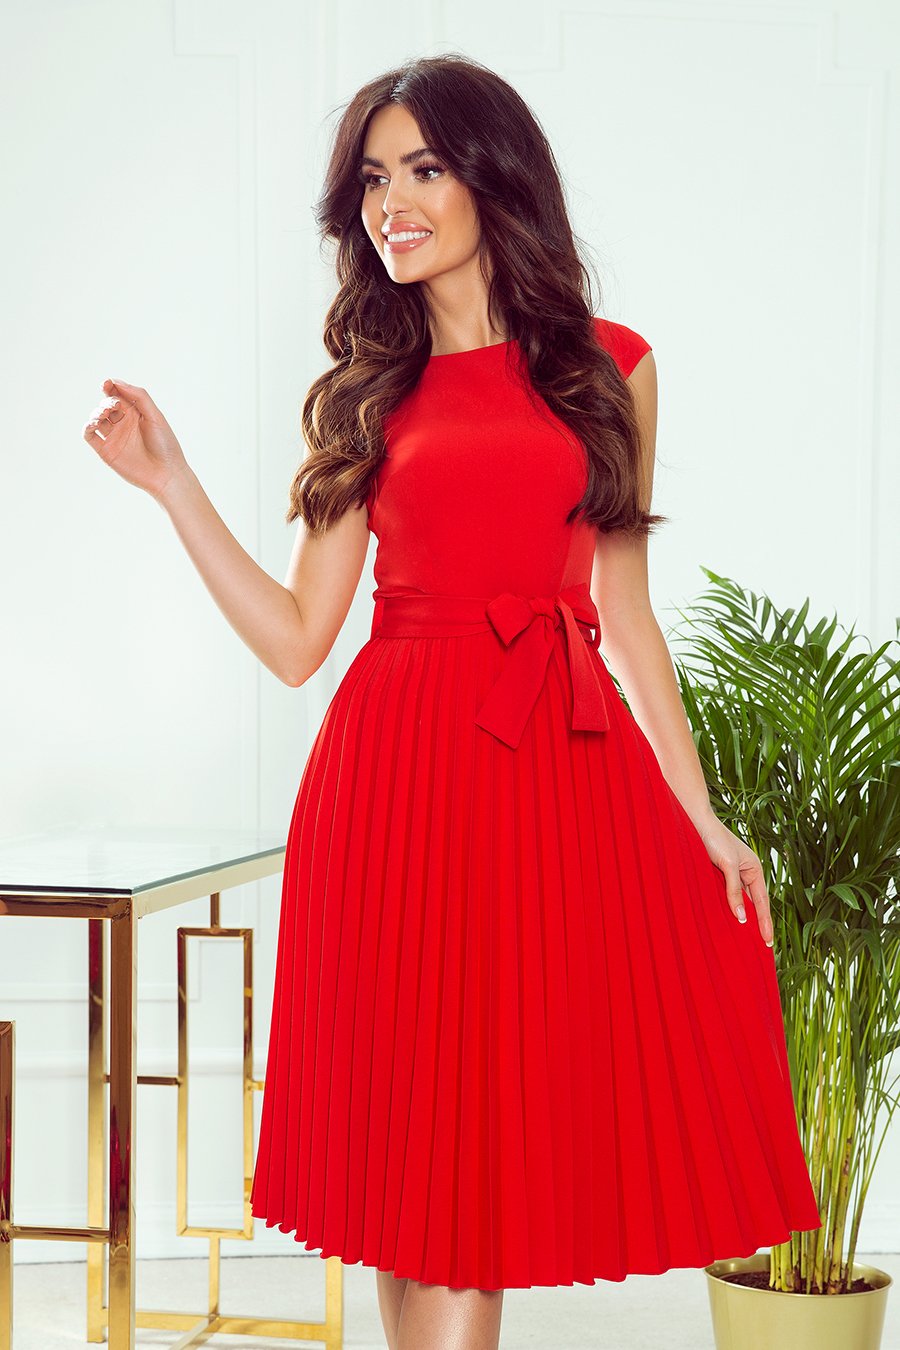 Γυναικείο φόρεμα Annette, Κόκκινο 5